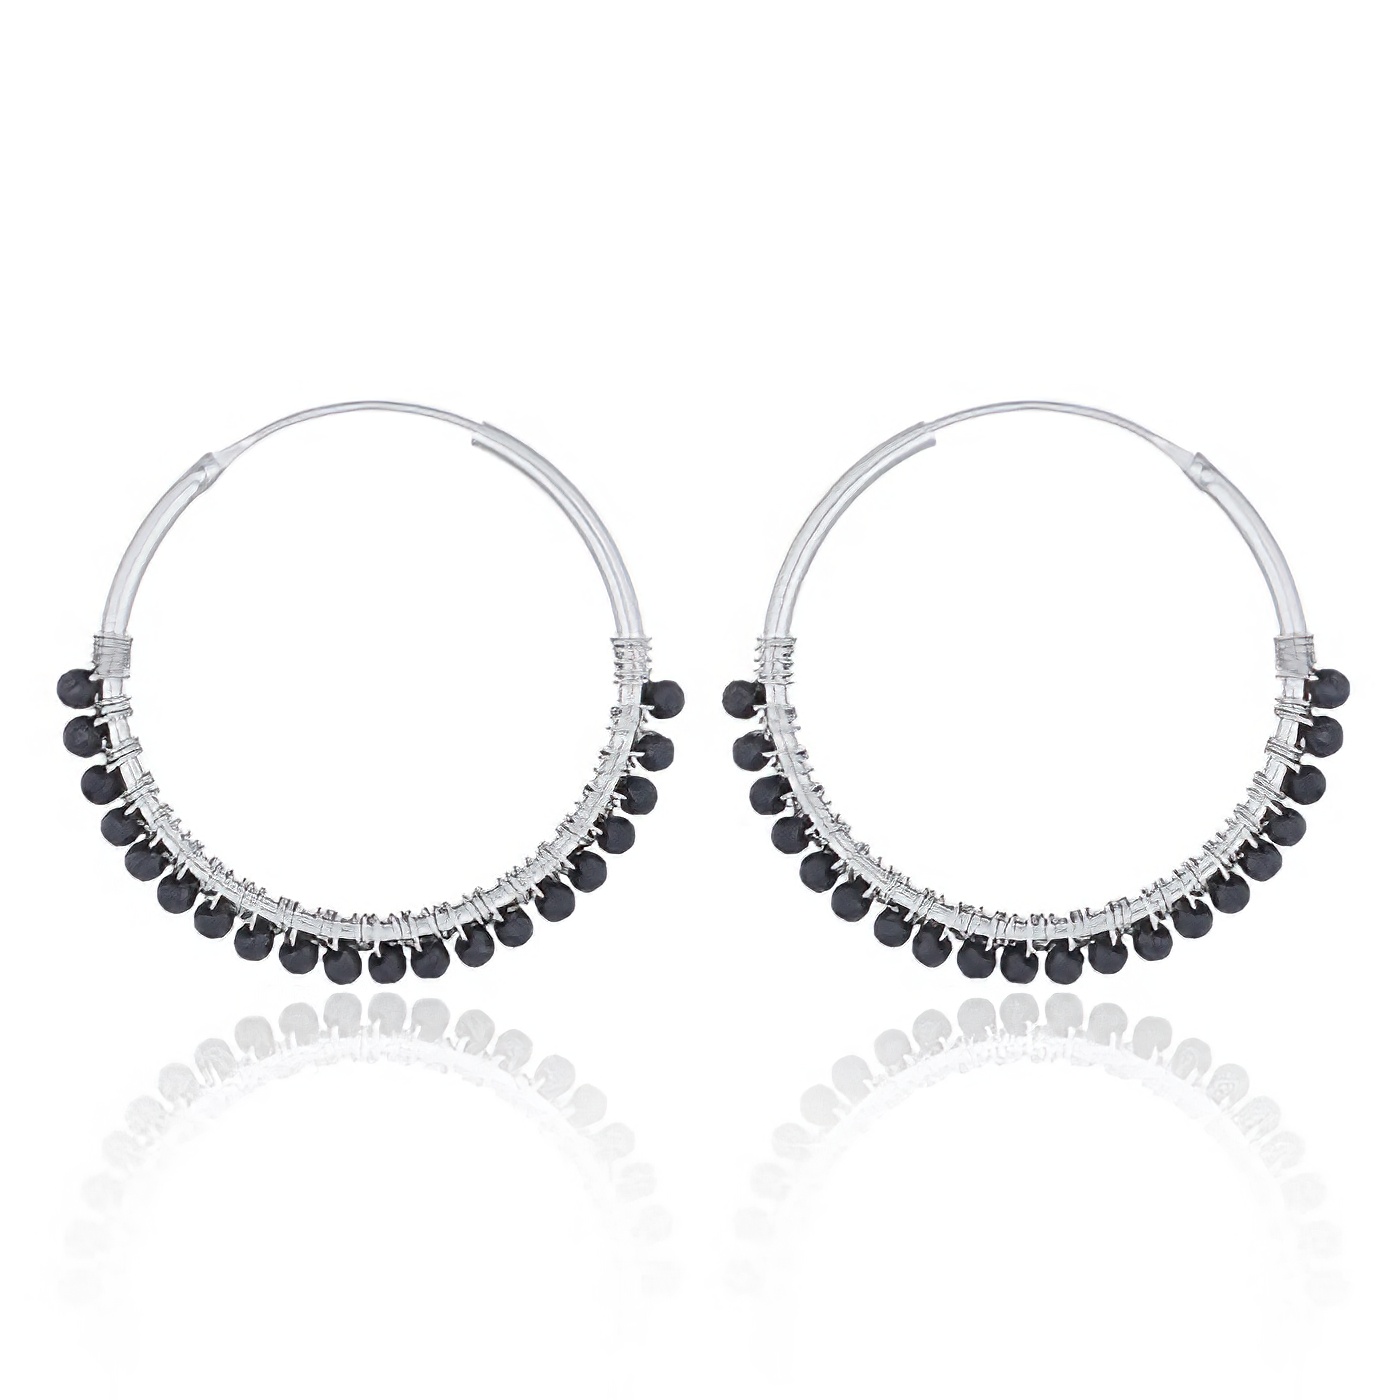 Faceted Black Agate Sterling Silver Hoop Earrings by BeYindi 